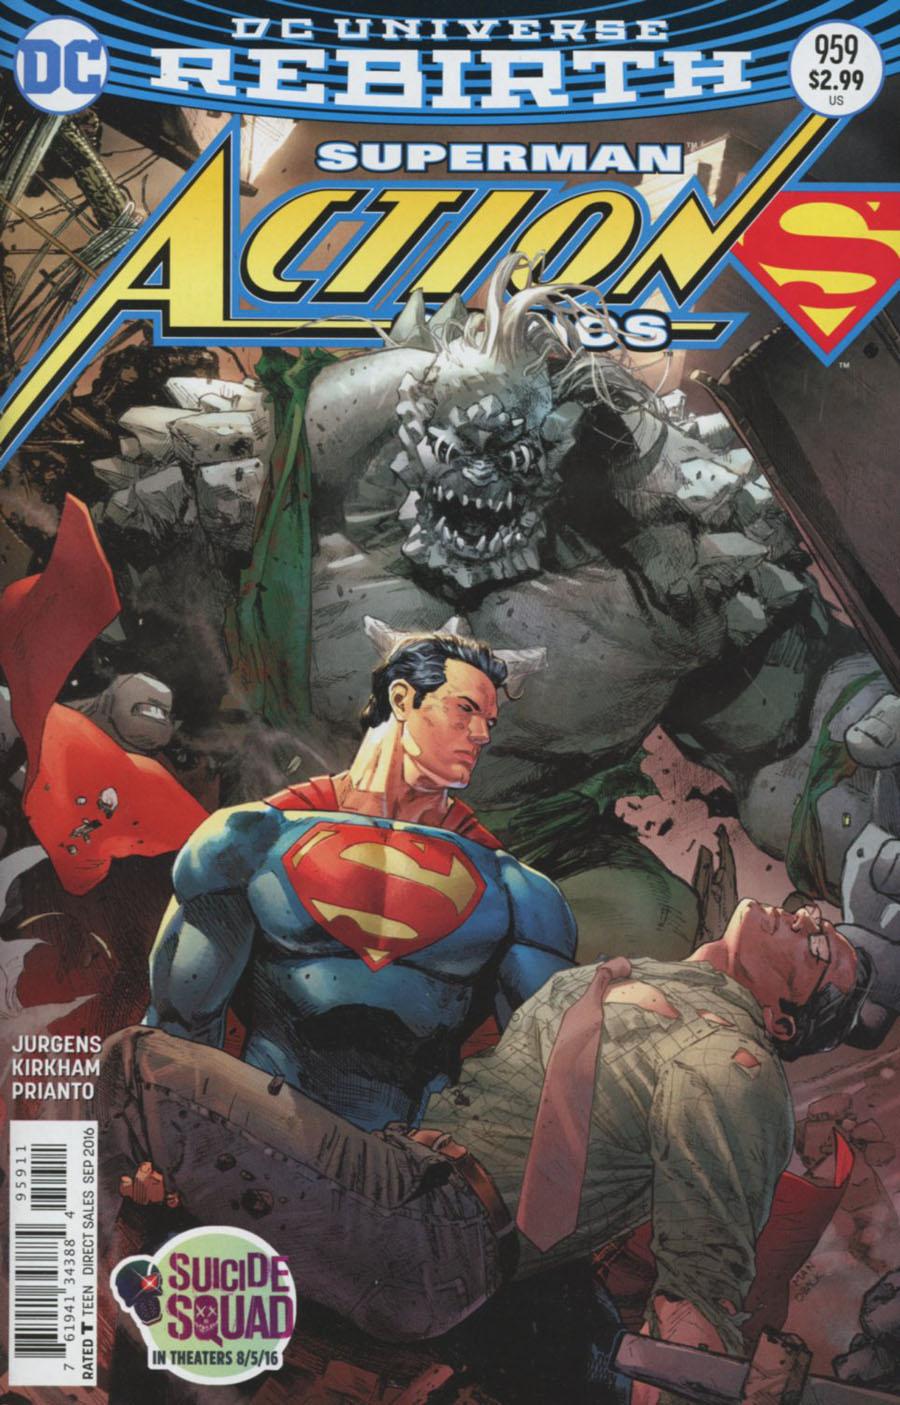 Action Comics Vol. 2 #959